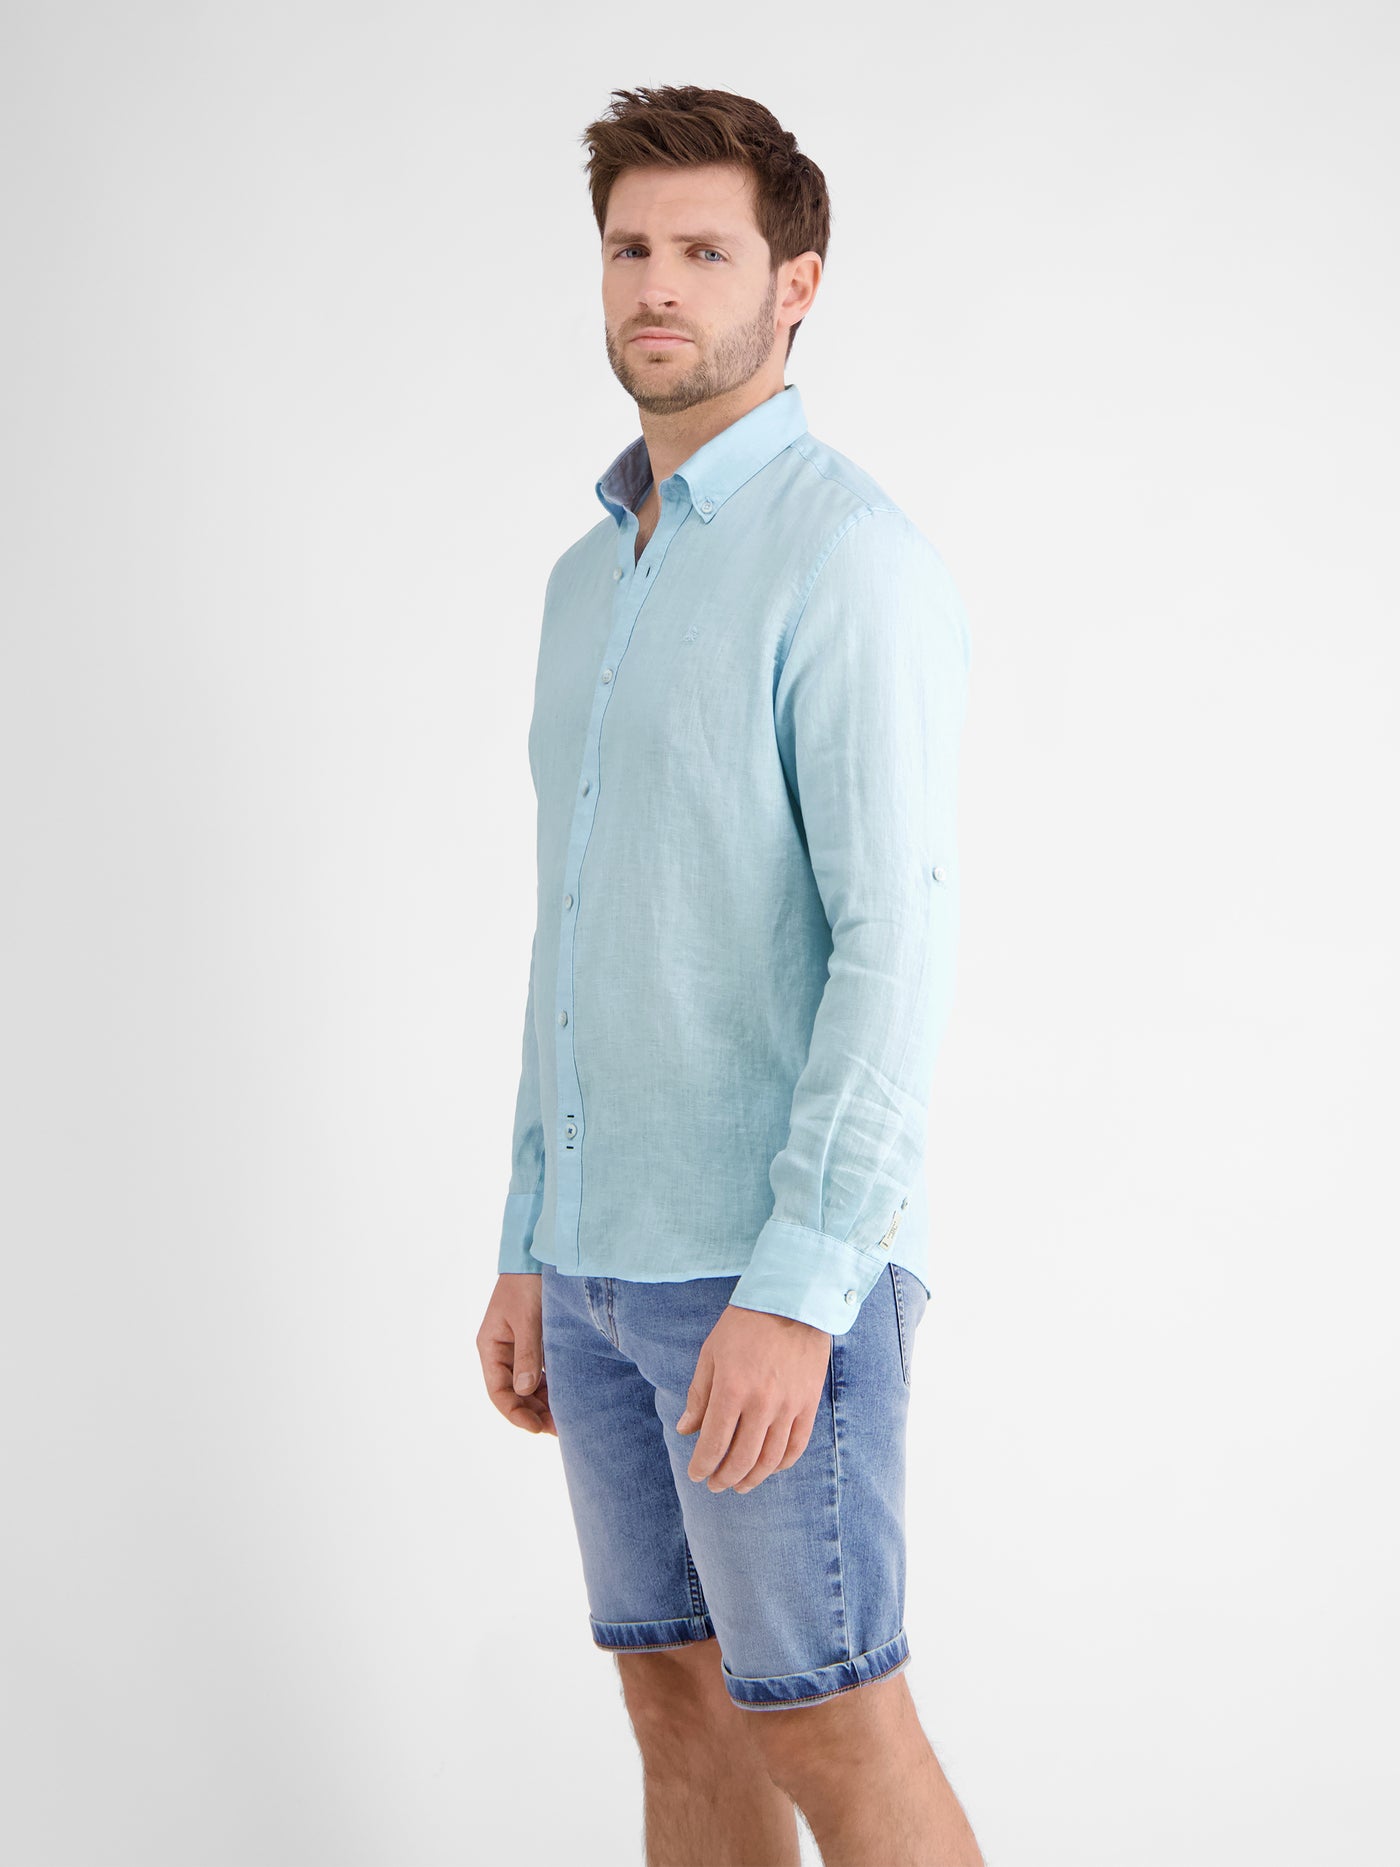 Men's casual linen shirt, long sleeves